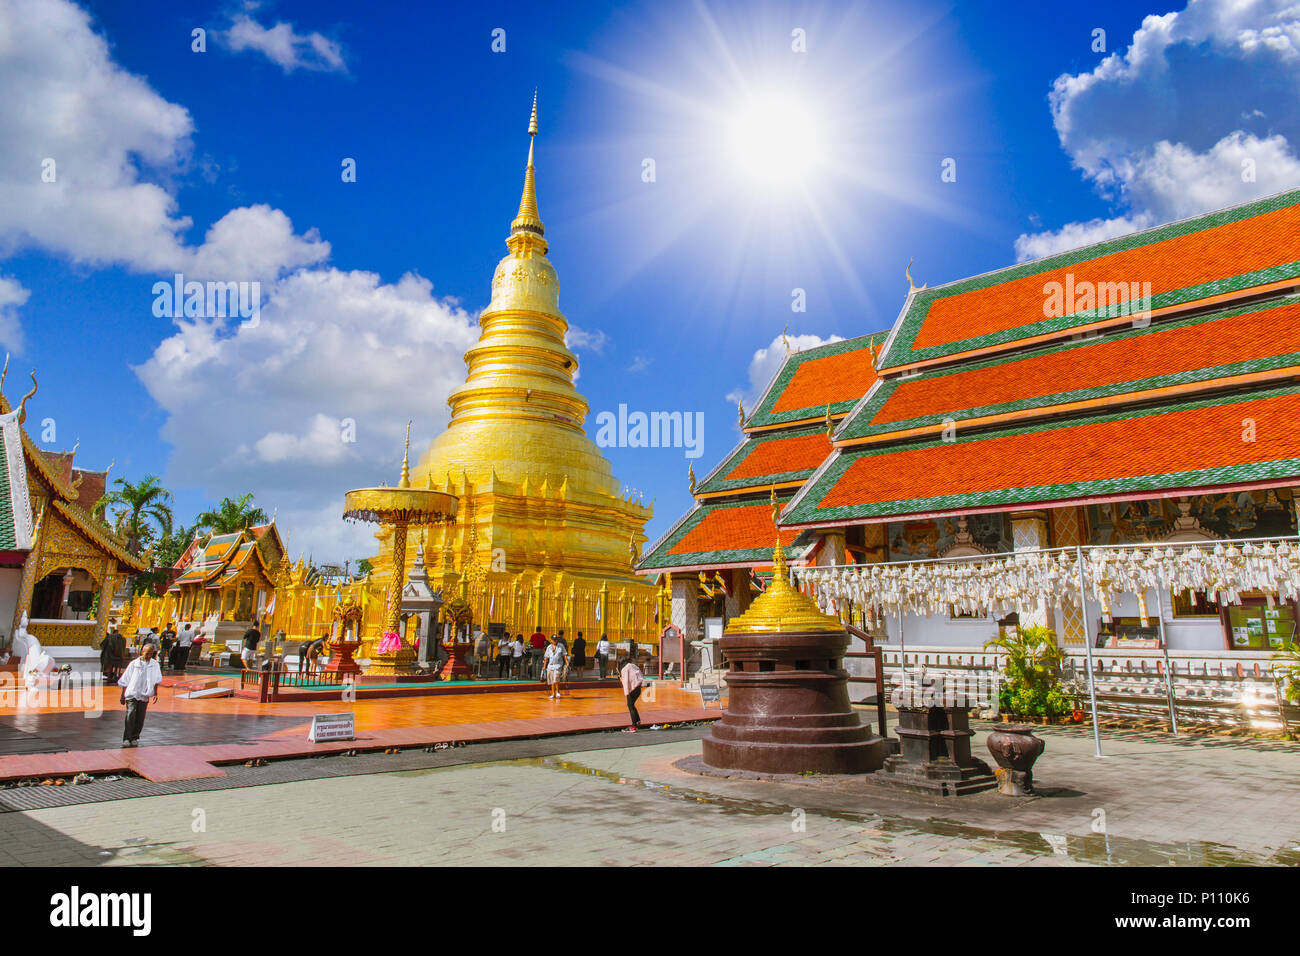 Wat Phra That hariphunchai lamphun Temple que plus belle et plus populaire destination voyage Temple dans la province Nord à Lamphun Thaïlande 12 Février Banque D'Images